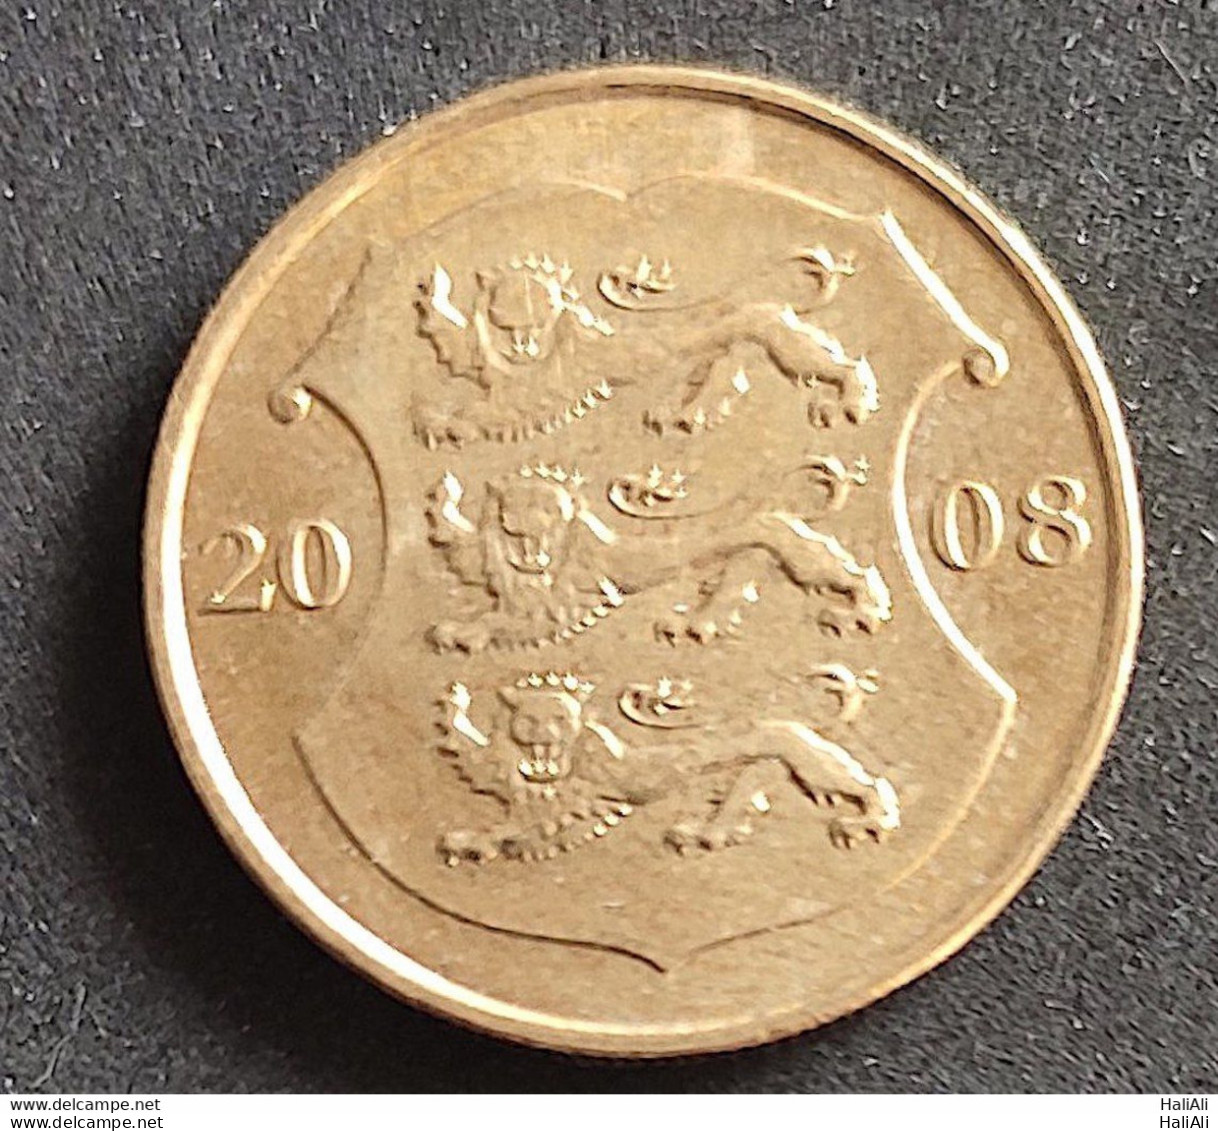 Coin Estonia 2008 1 Kroon 1 - Estonie